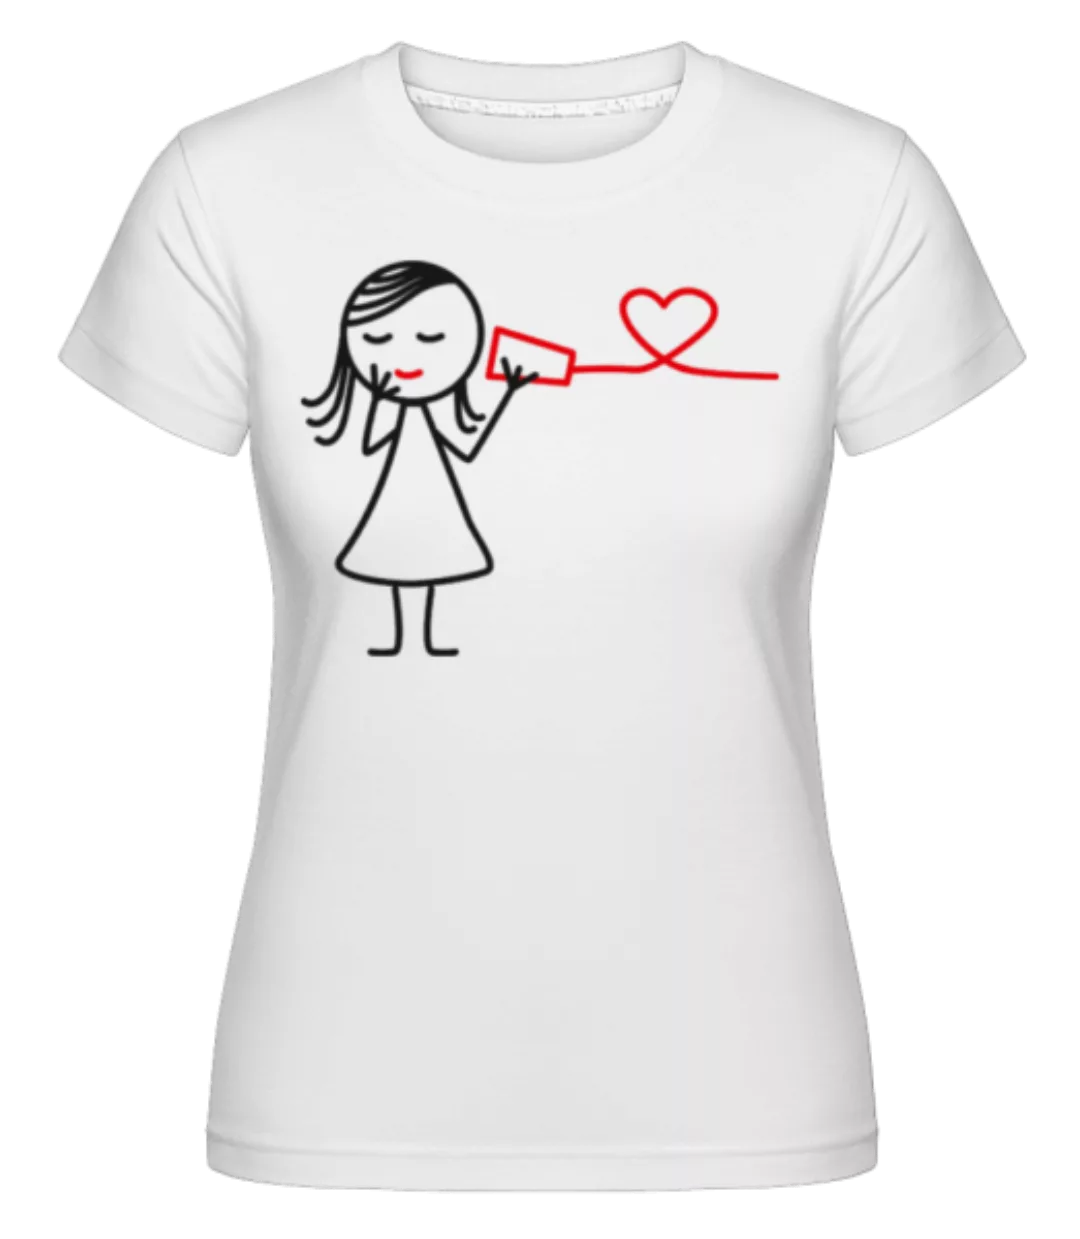 Schnurtelefon Frau · Shirtinator Frauen T-Shirt günstig online kaufen